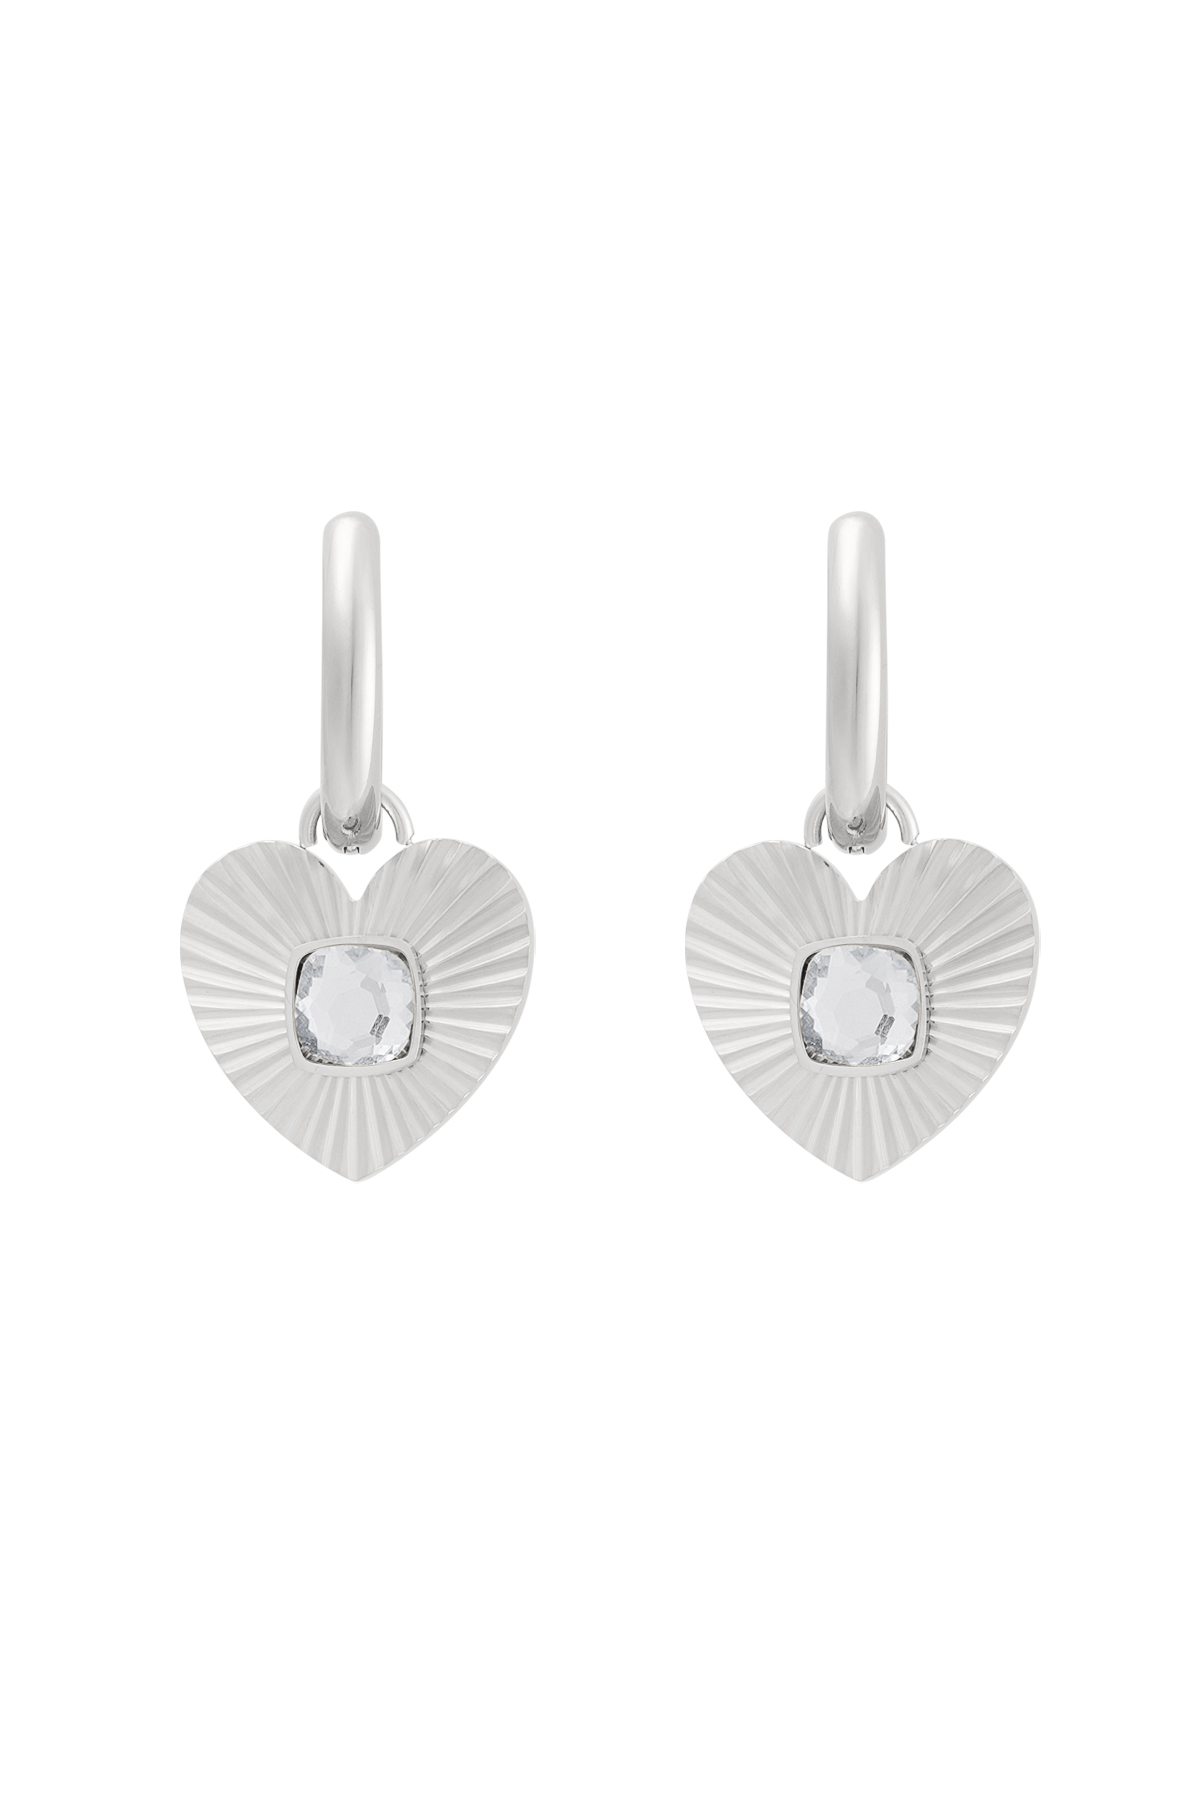 Boucles d'oreilles coeur avec pierre - argent/blanc 